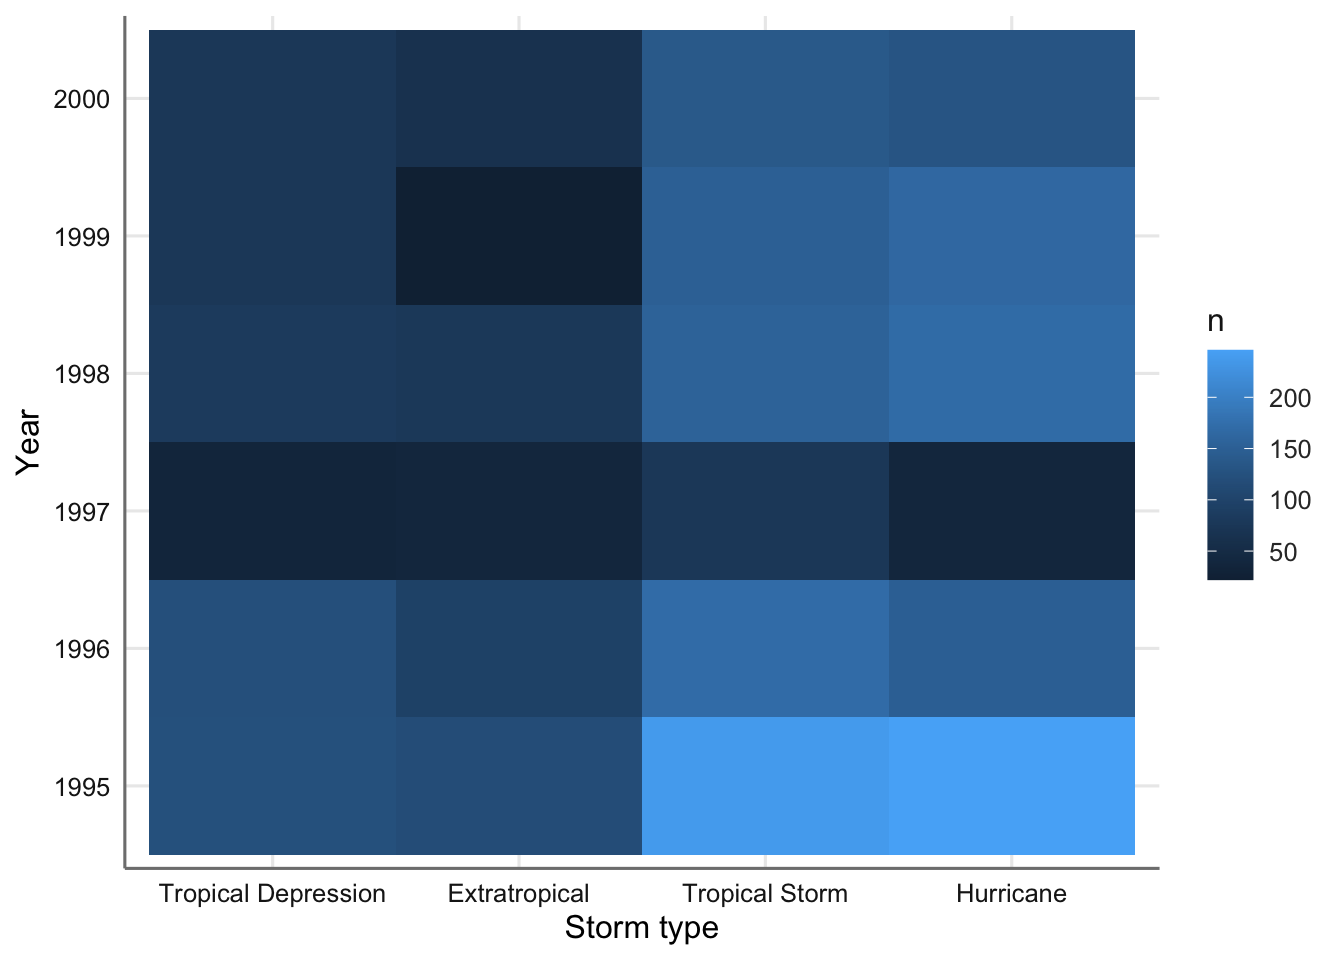 Mapa de intensidad para el tipo de tormenta versus año.